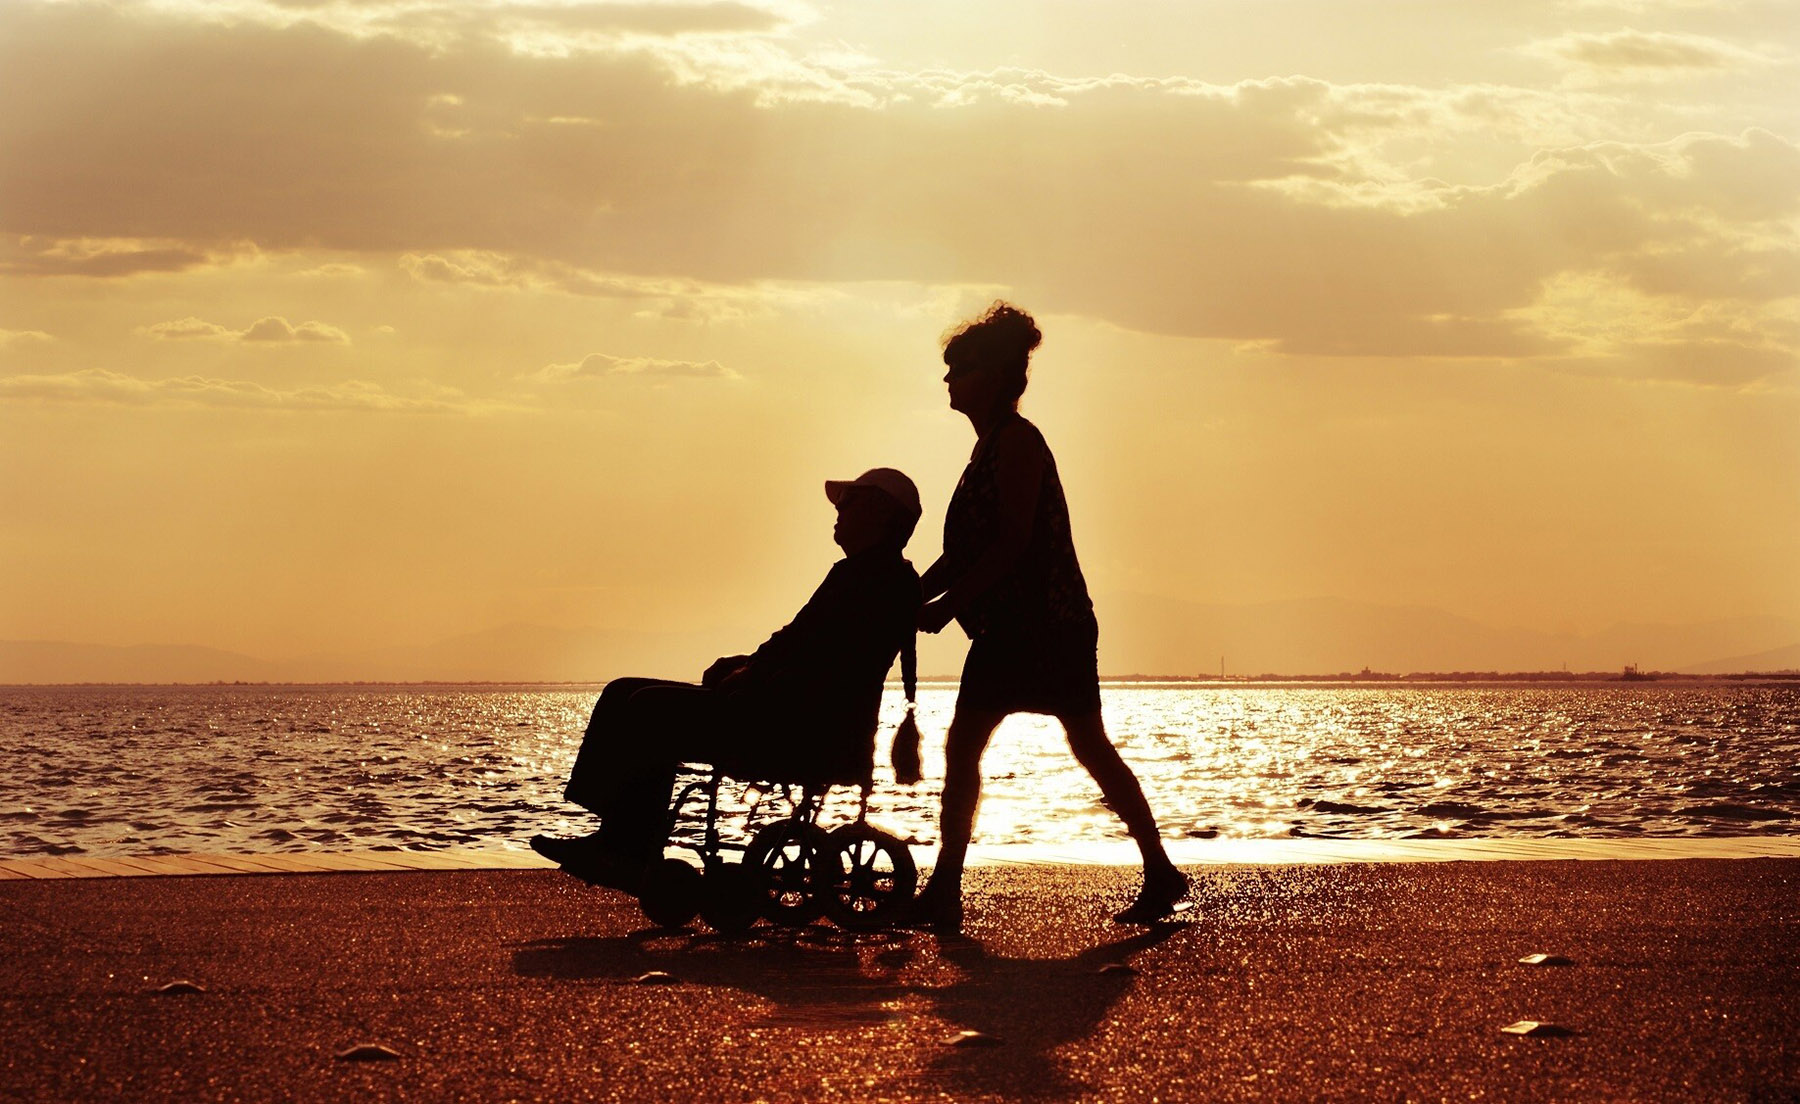 Une soignante accompagne un homme en fauteuil roulant sur la plage, avec la mer et le coucher de soleil en arrière-plan.